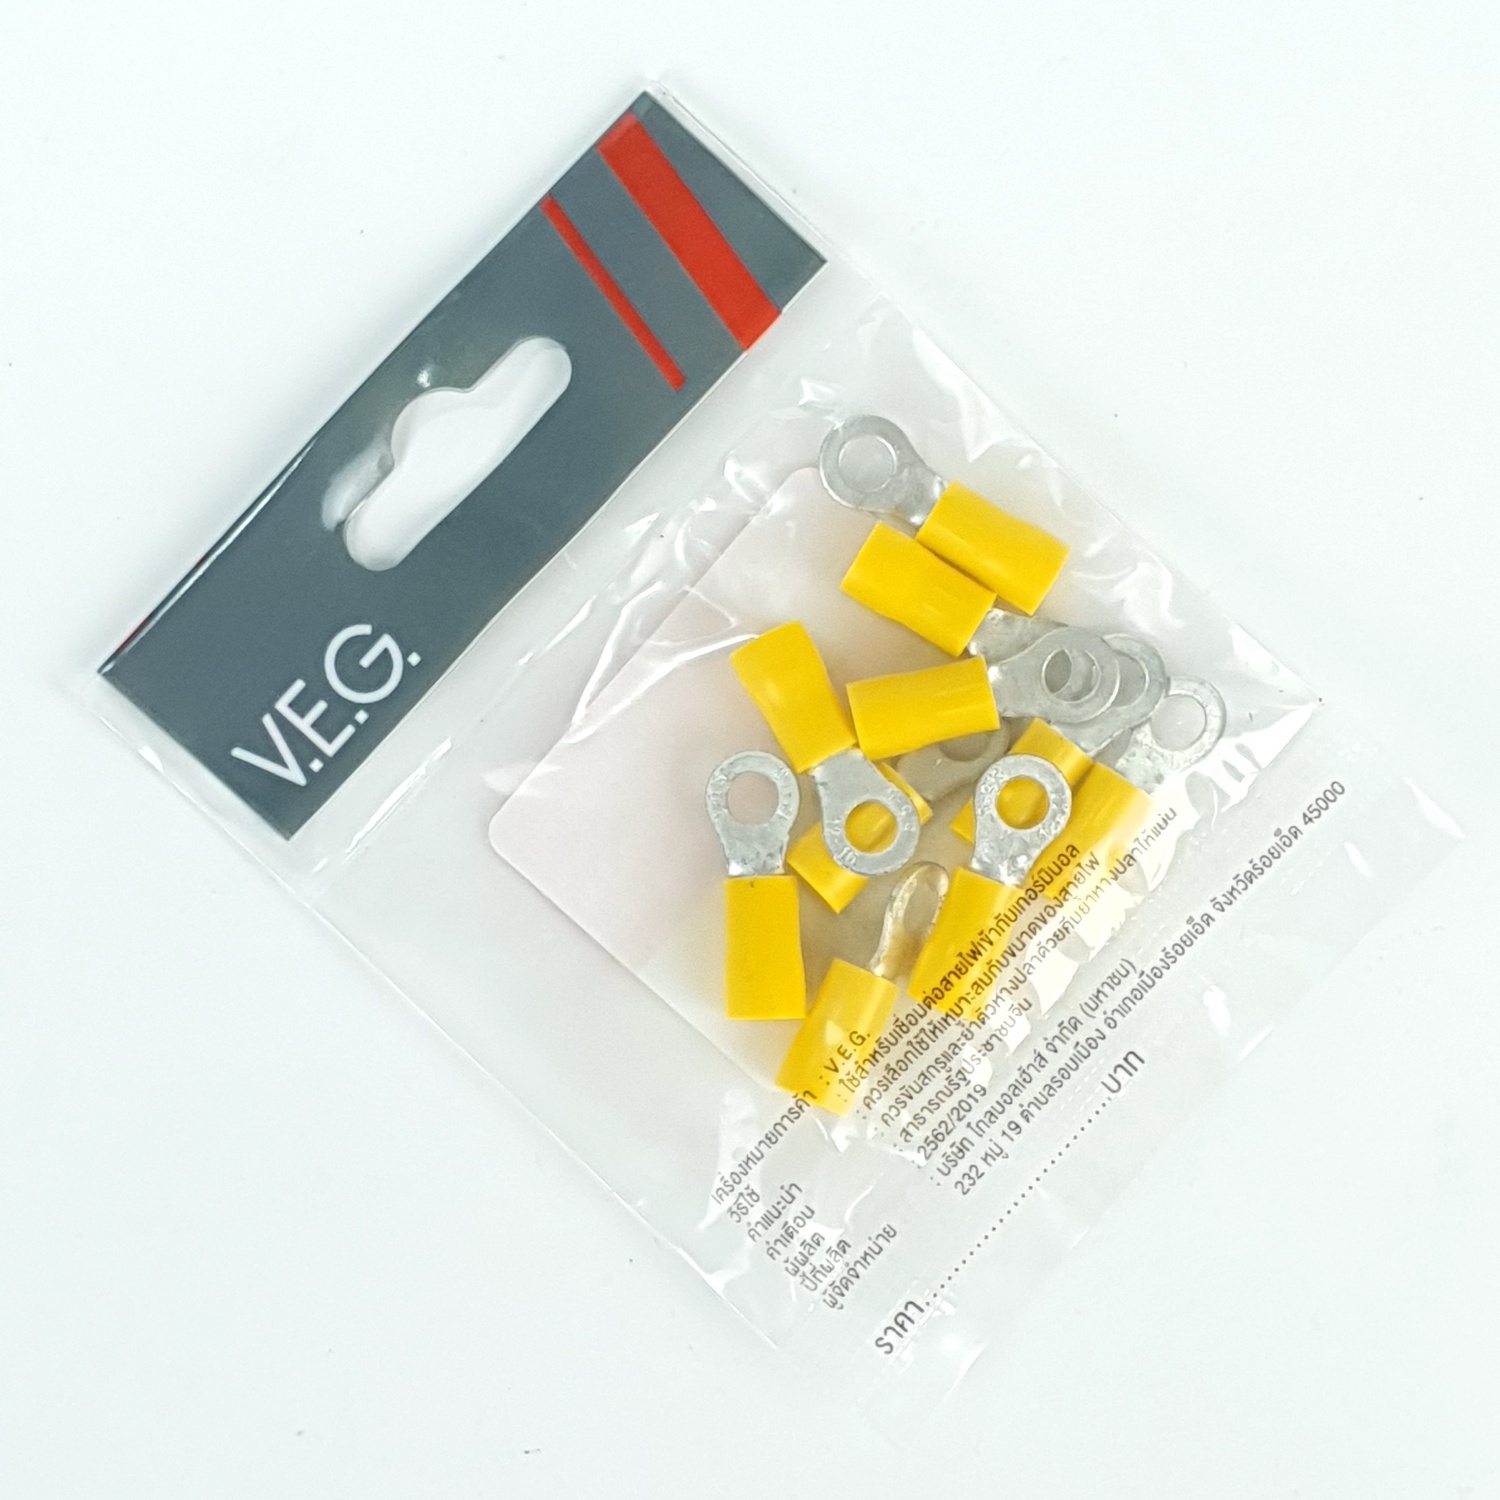 V.E.G. หางปลากลมหุ้ม RF6-5 สีเหลือง ( 10ชิ้น/แพค)